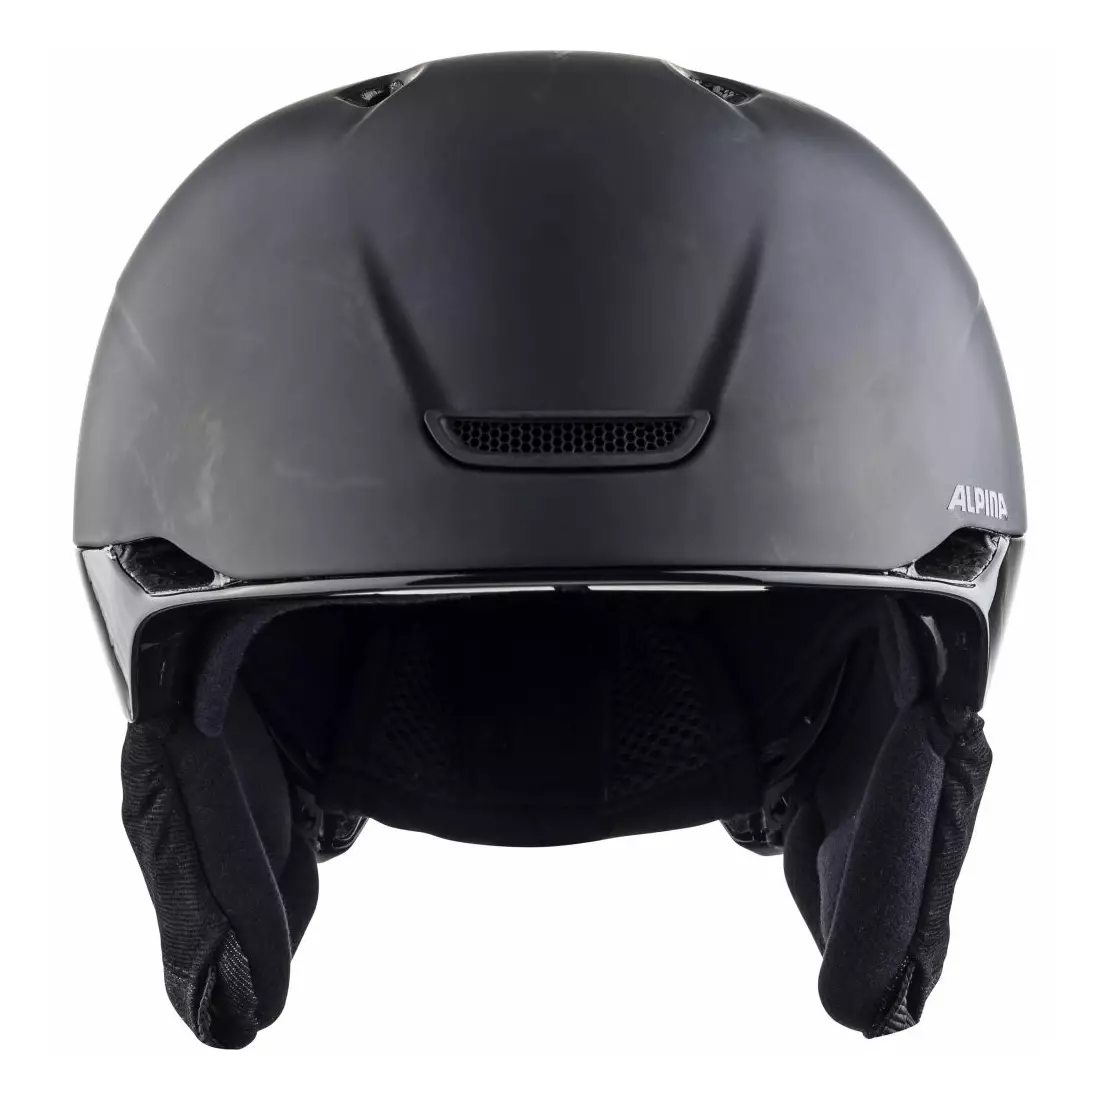 ALPINA ski/snowboard winter helmet PARSENA black matt 52-56 A9207132 II quality